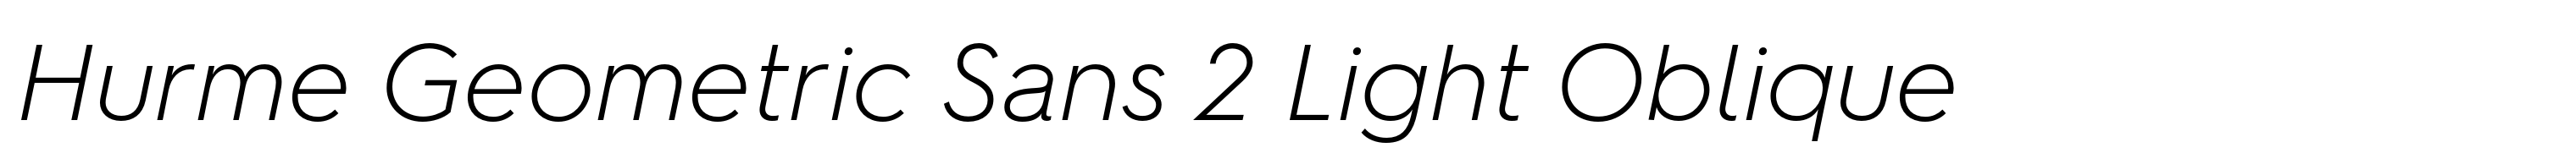 Hurme Geometric Sans 2 Light Oblique